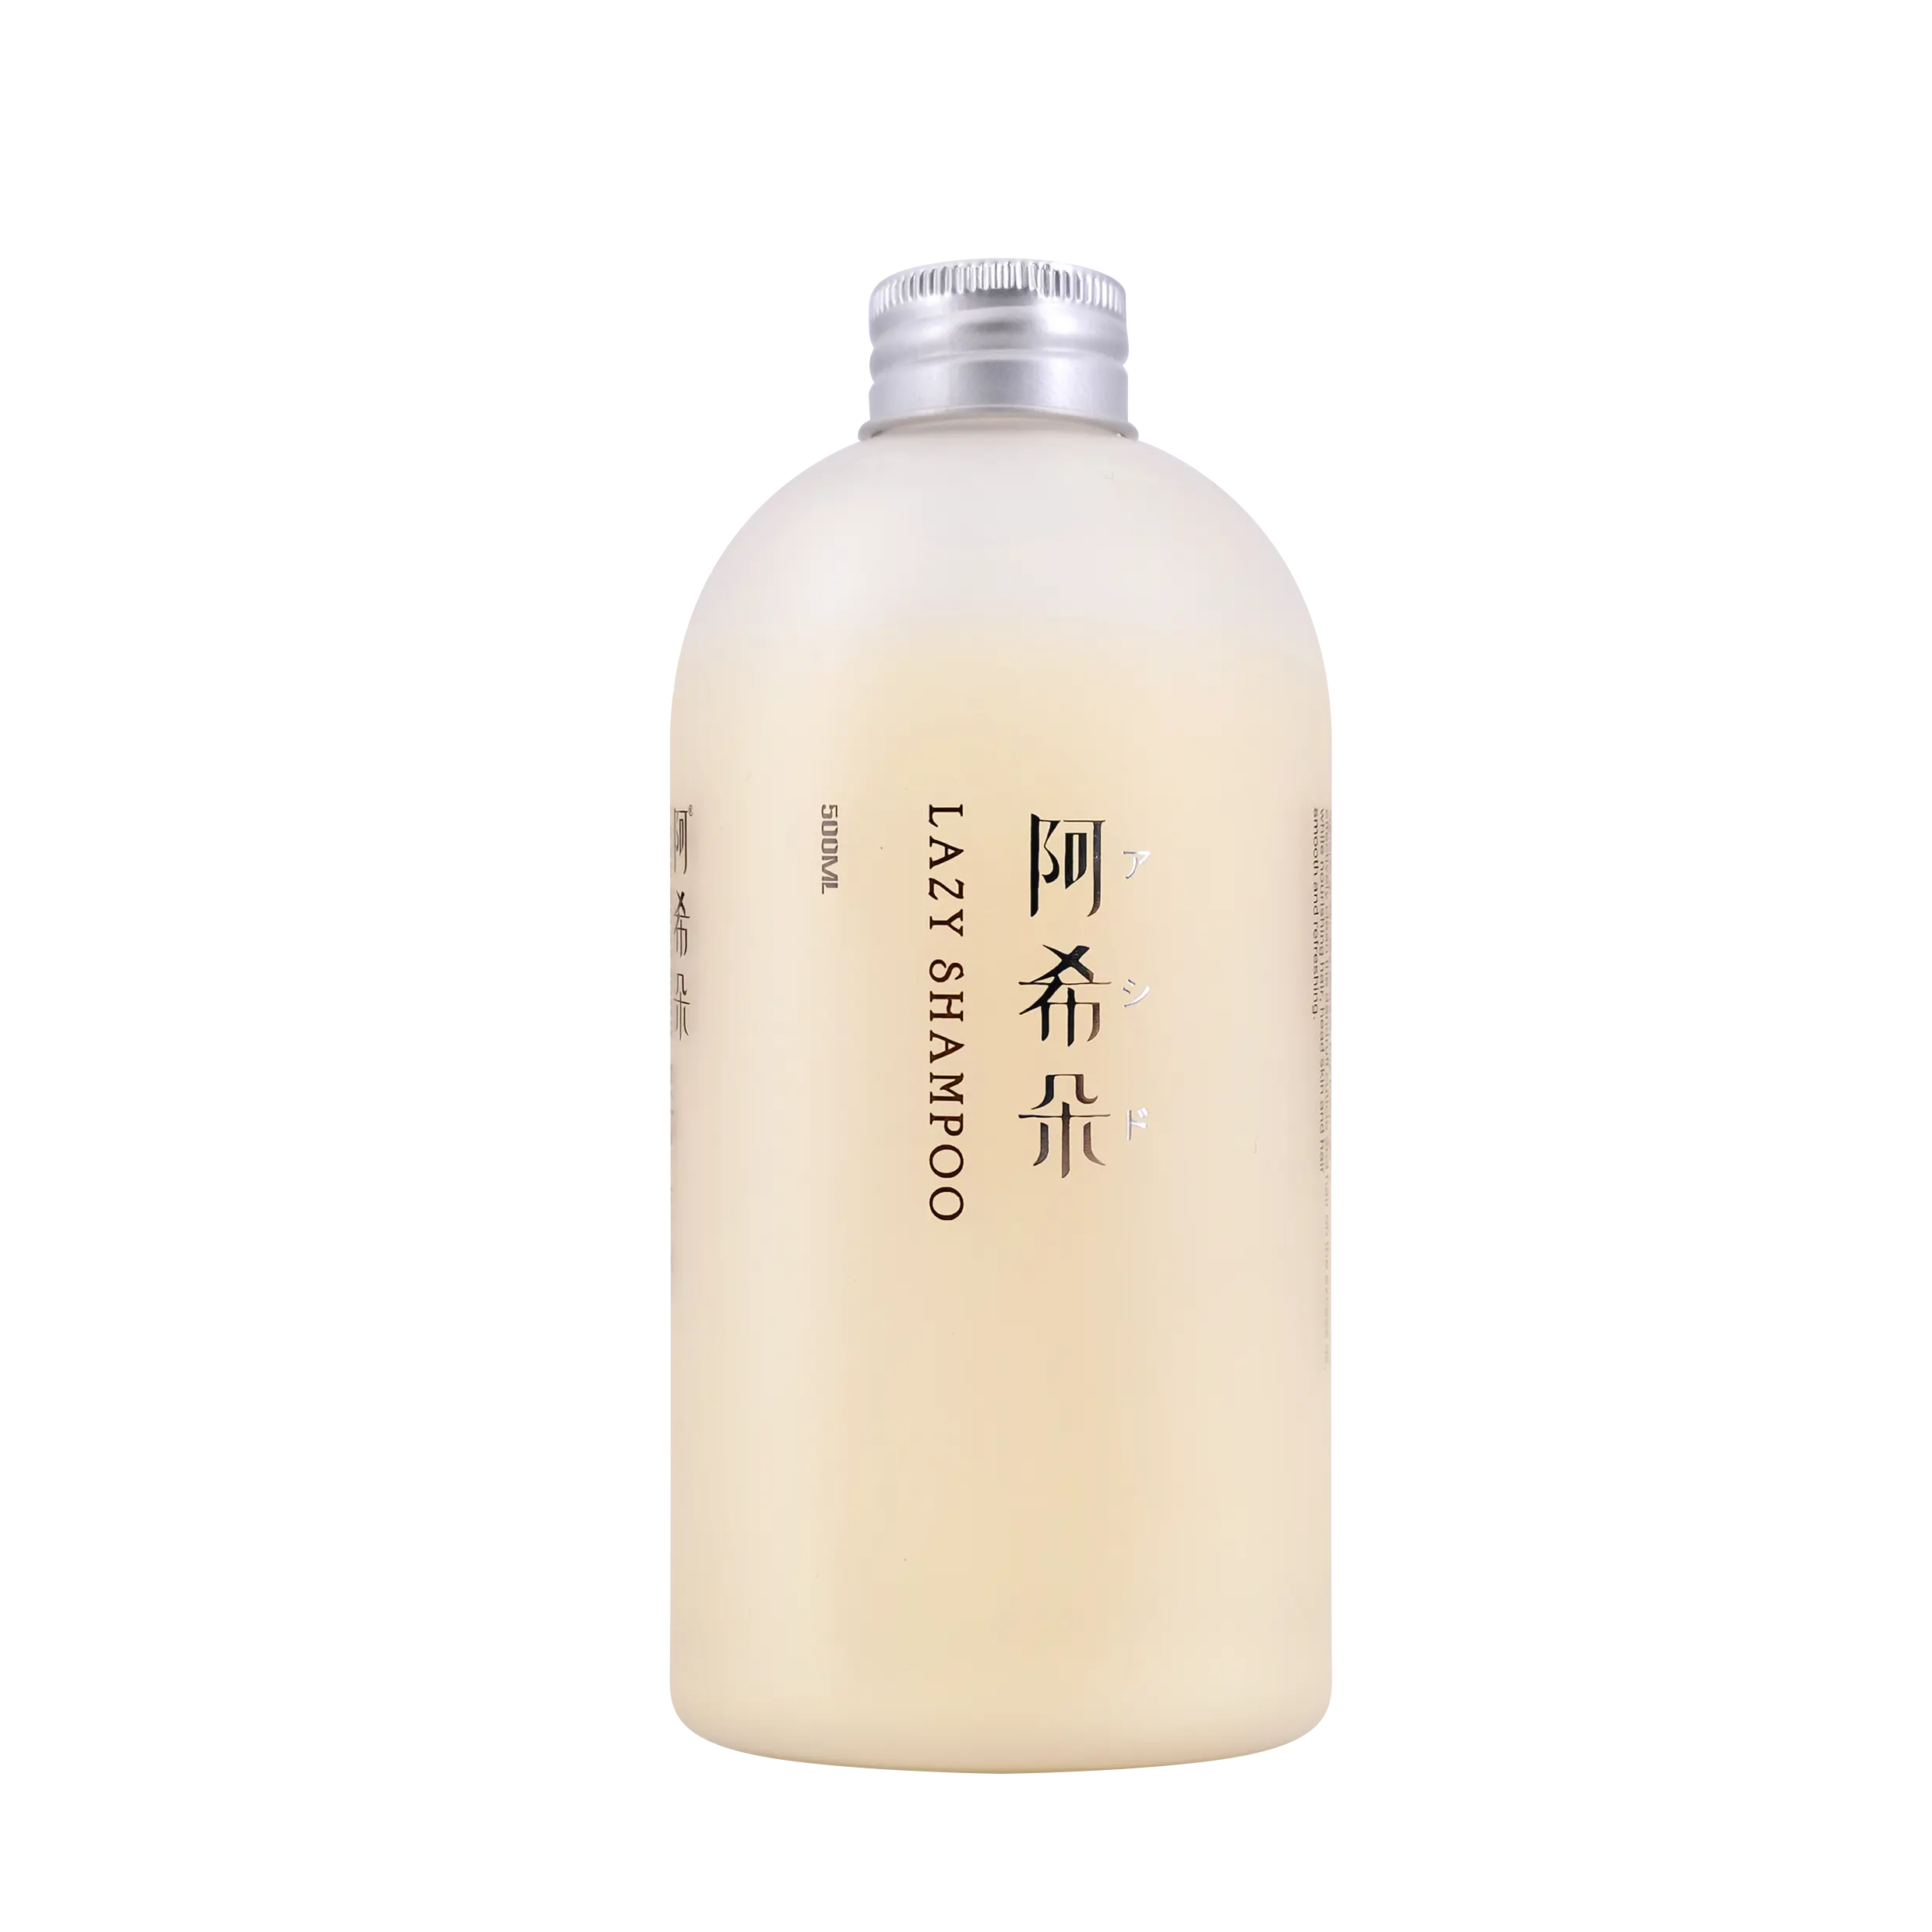 Shampoo livre do sulfato do biotin do cuidado do tratamento do cabelo 5 em 1 umidade Shampoo e condicionador complexos do cabelo do colagênio do reparo da força